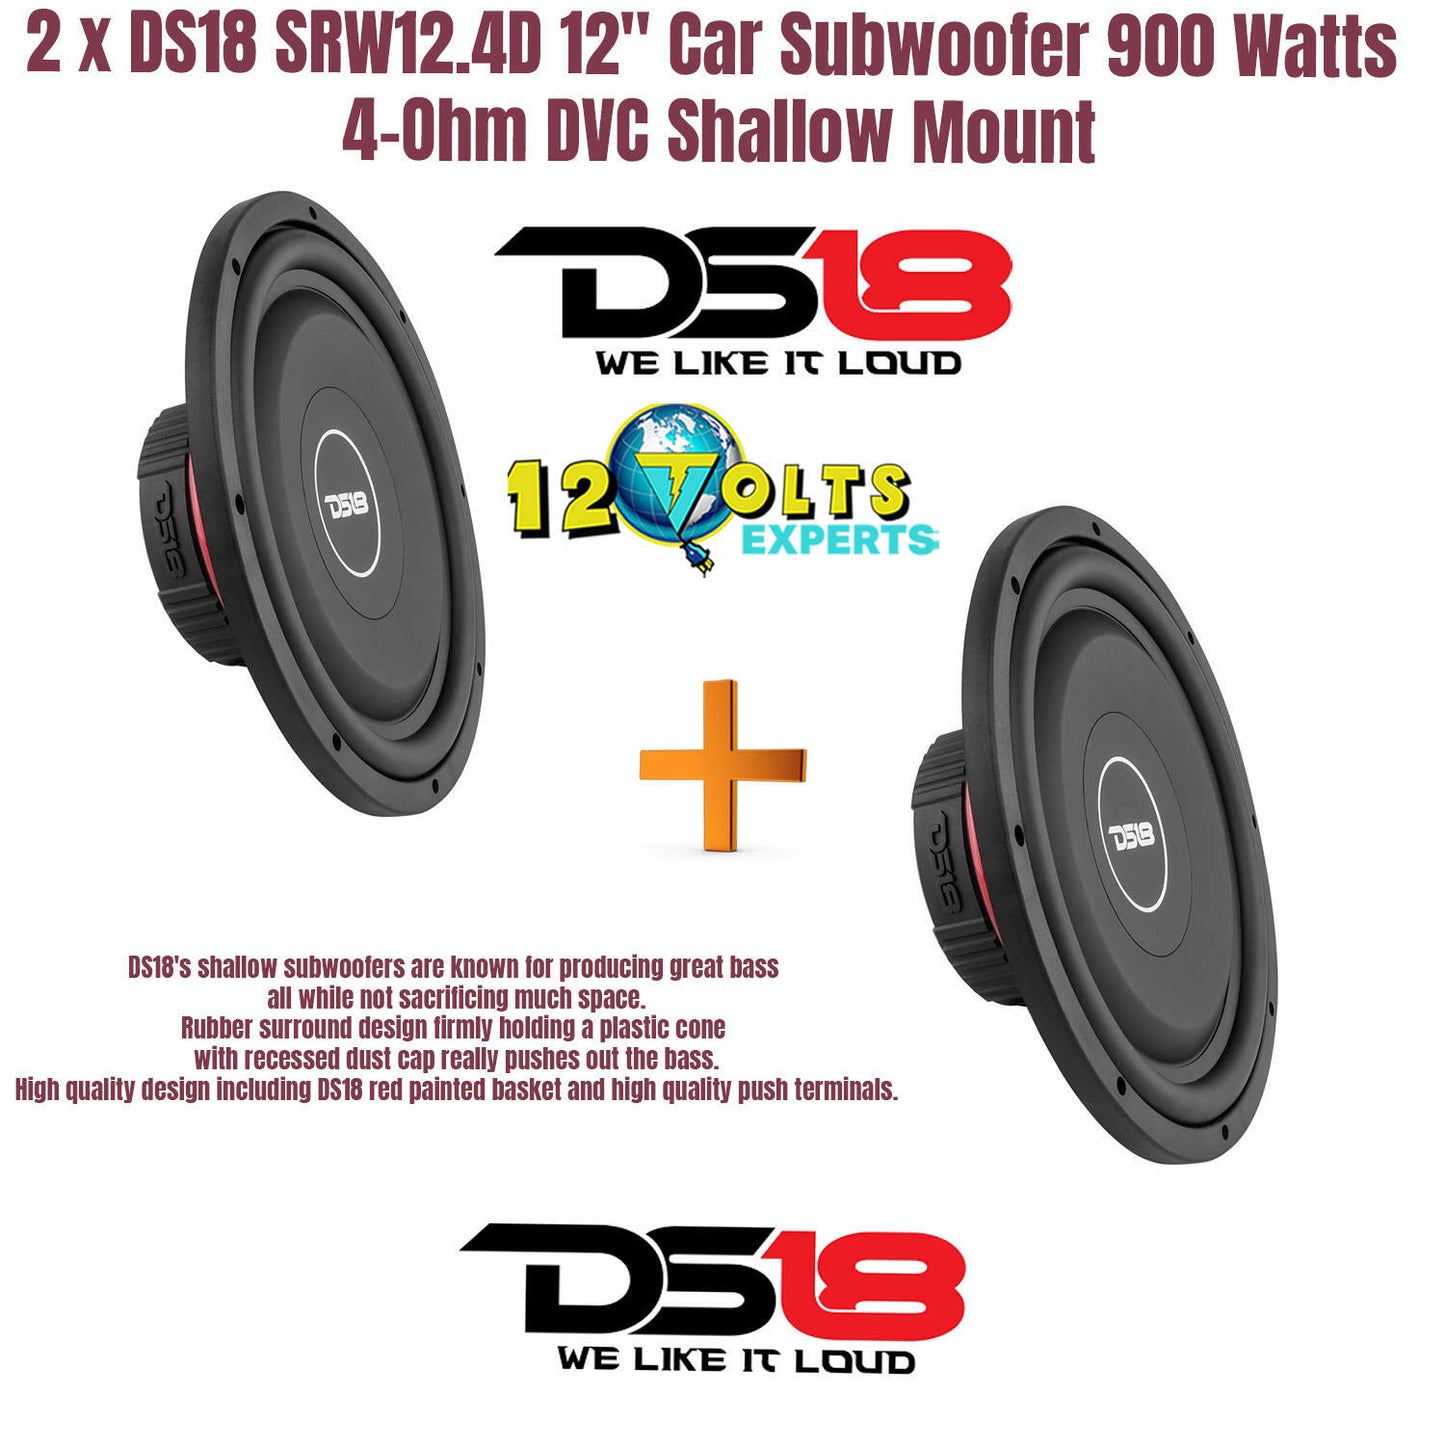 2 x DS18 SRW12.4D 12" Car Subwoofer 900 Watts 4-Ohm DVC Shallow Mount